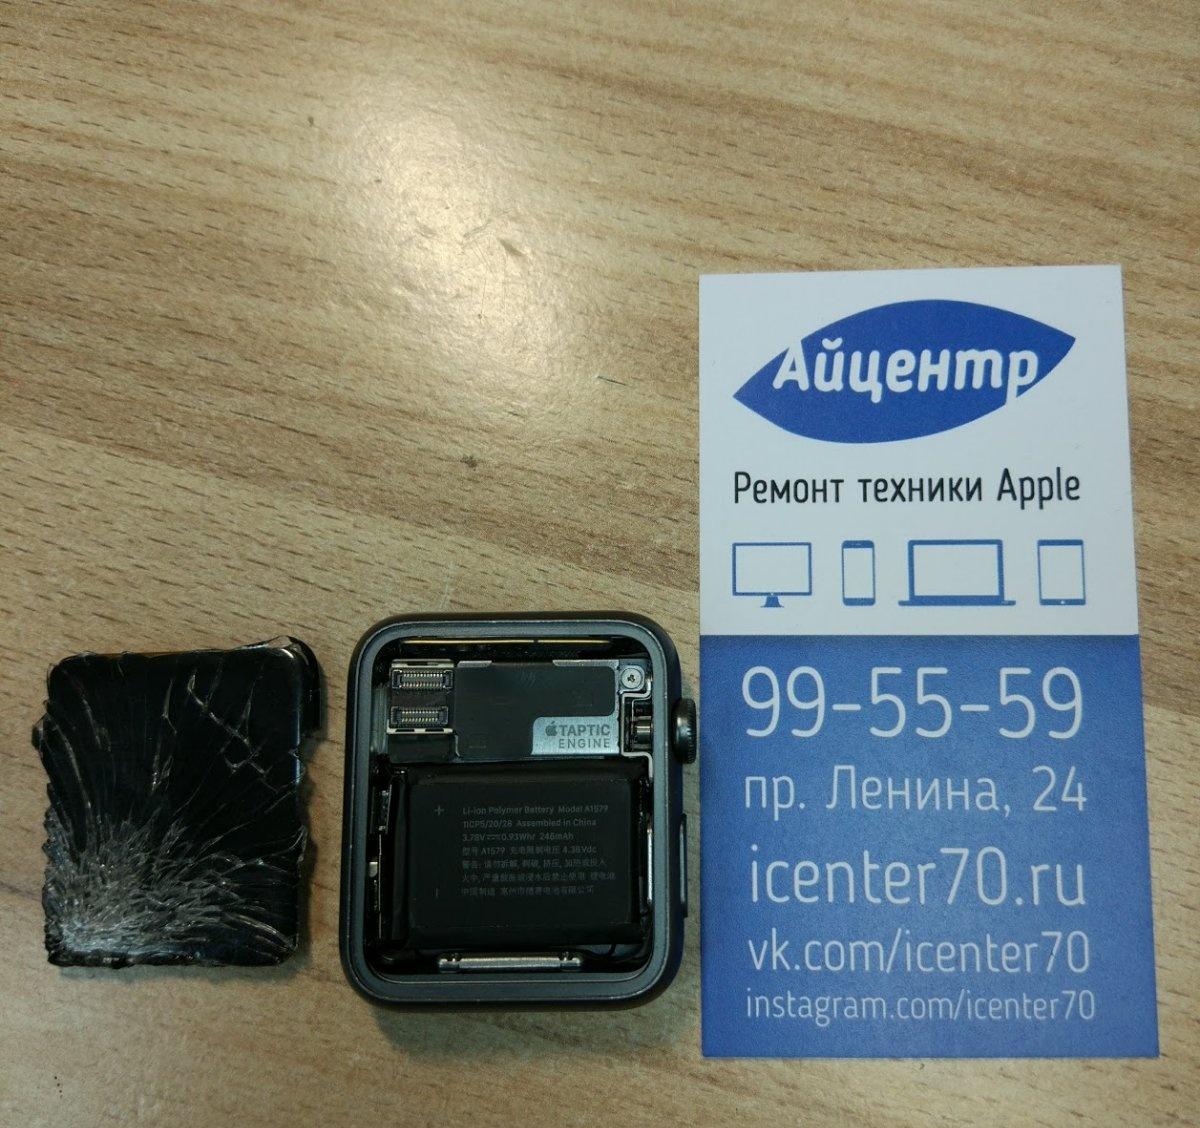 ICENTR Оренбург. 40 24 24 телефон